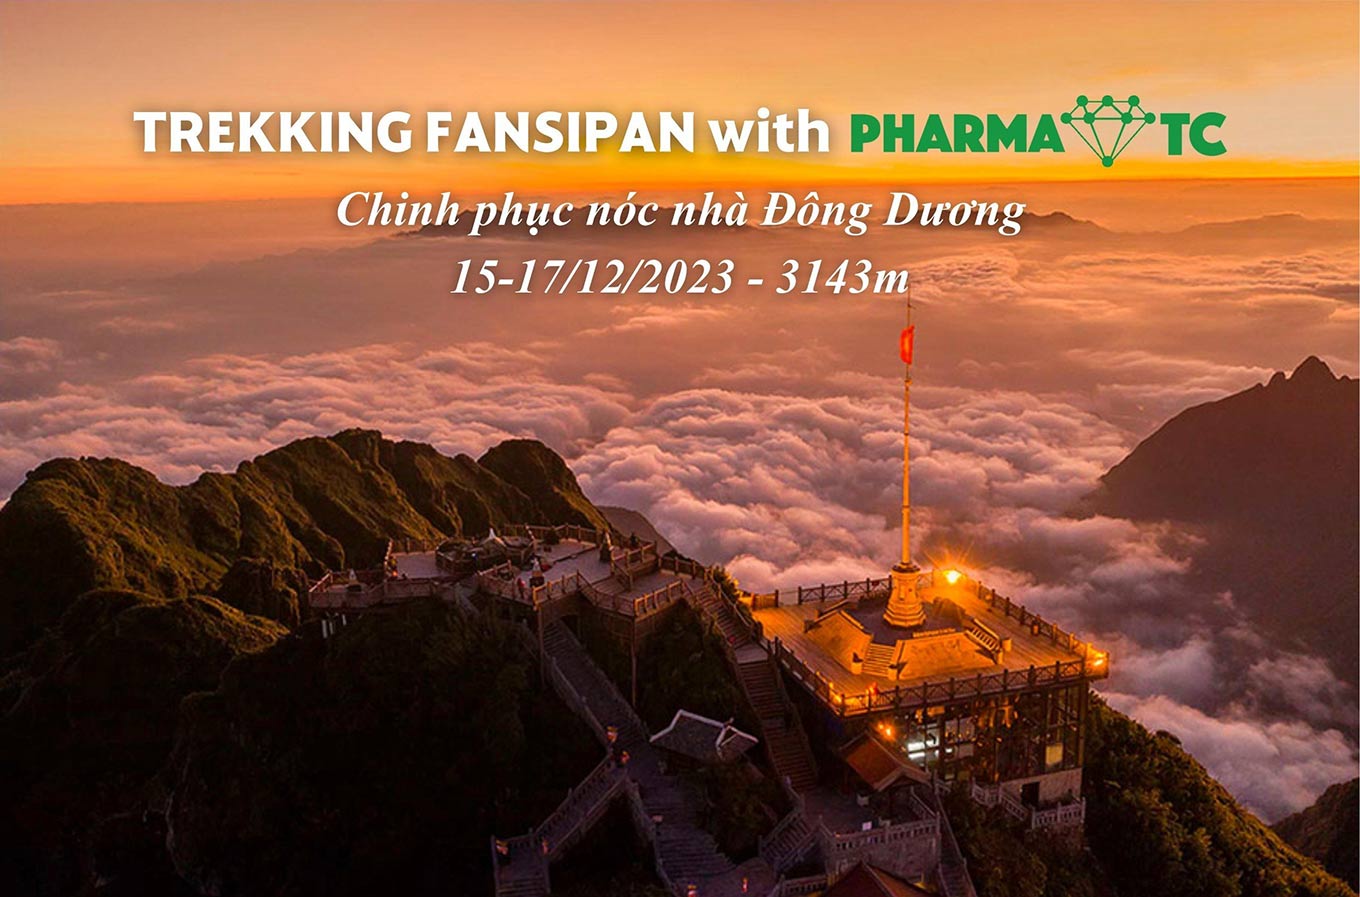 Chương trình Trekking Fansipan with PharmaOTC – Chinh phục nóc nhà Đông Dương